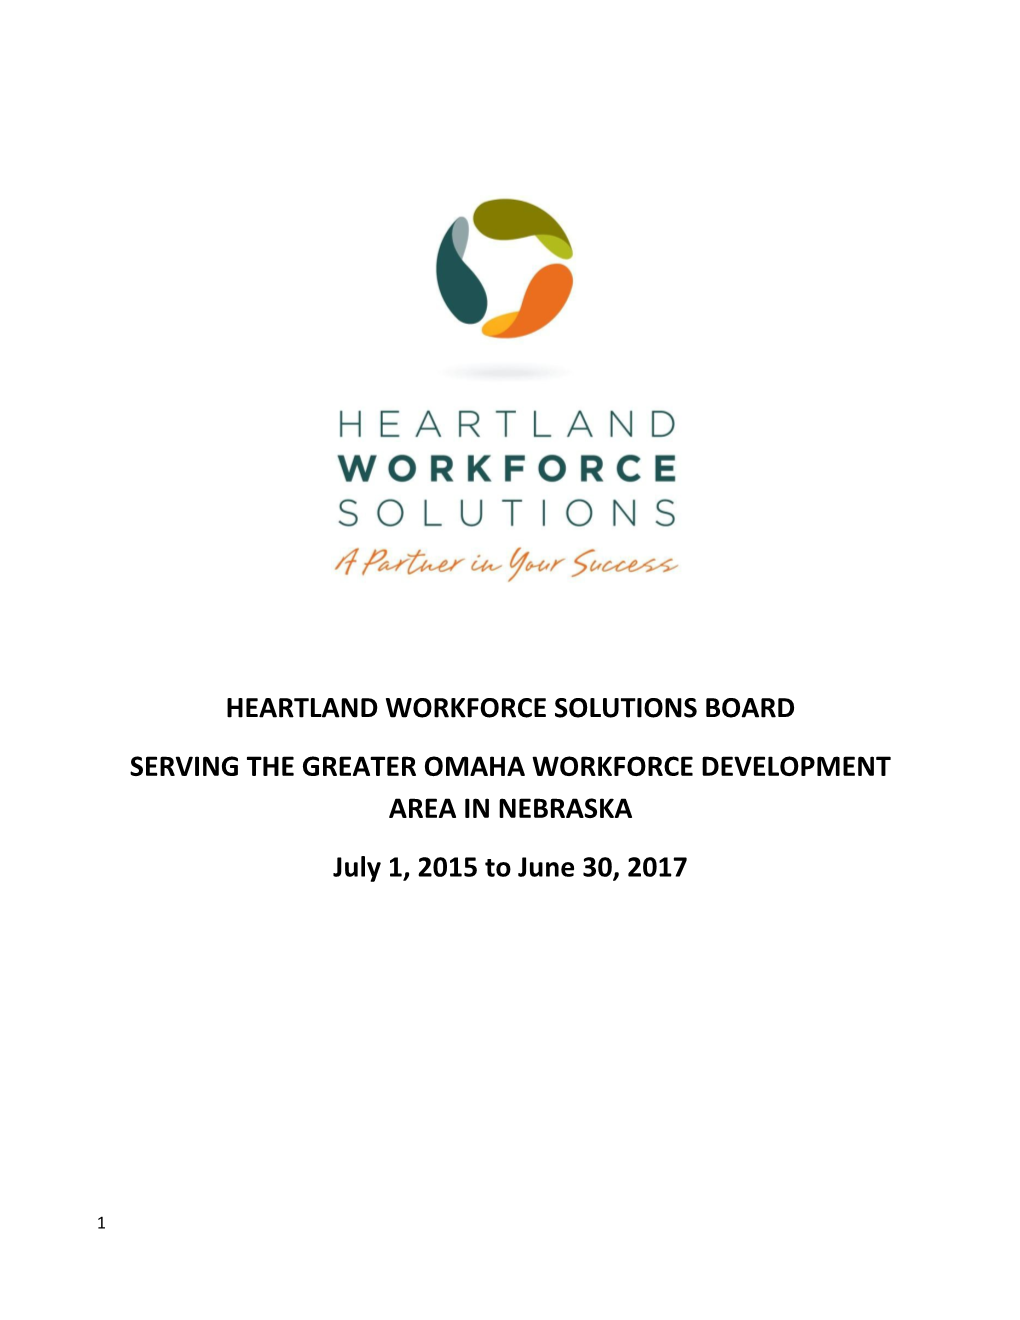 Heartland Workforce Solutions Board